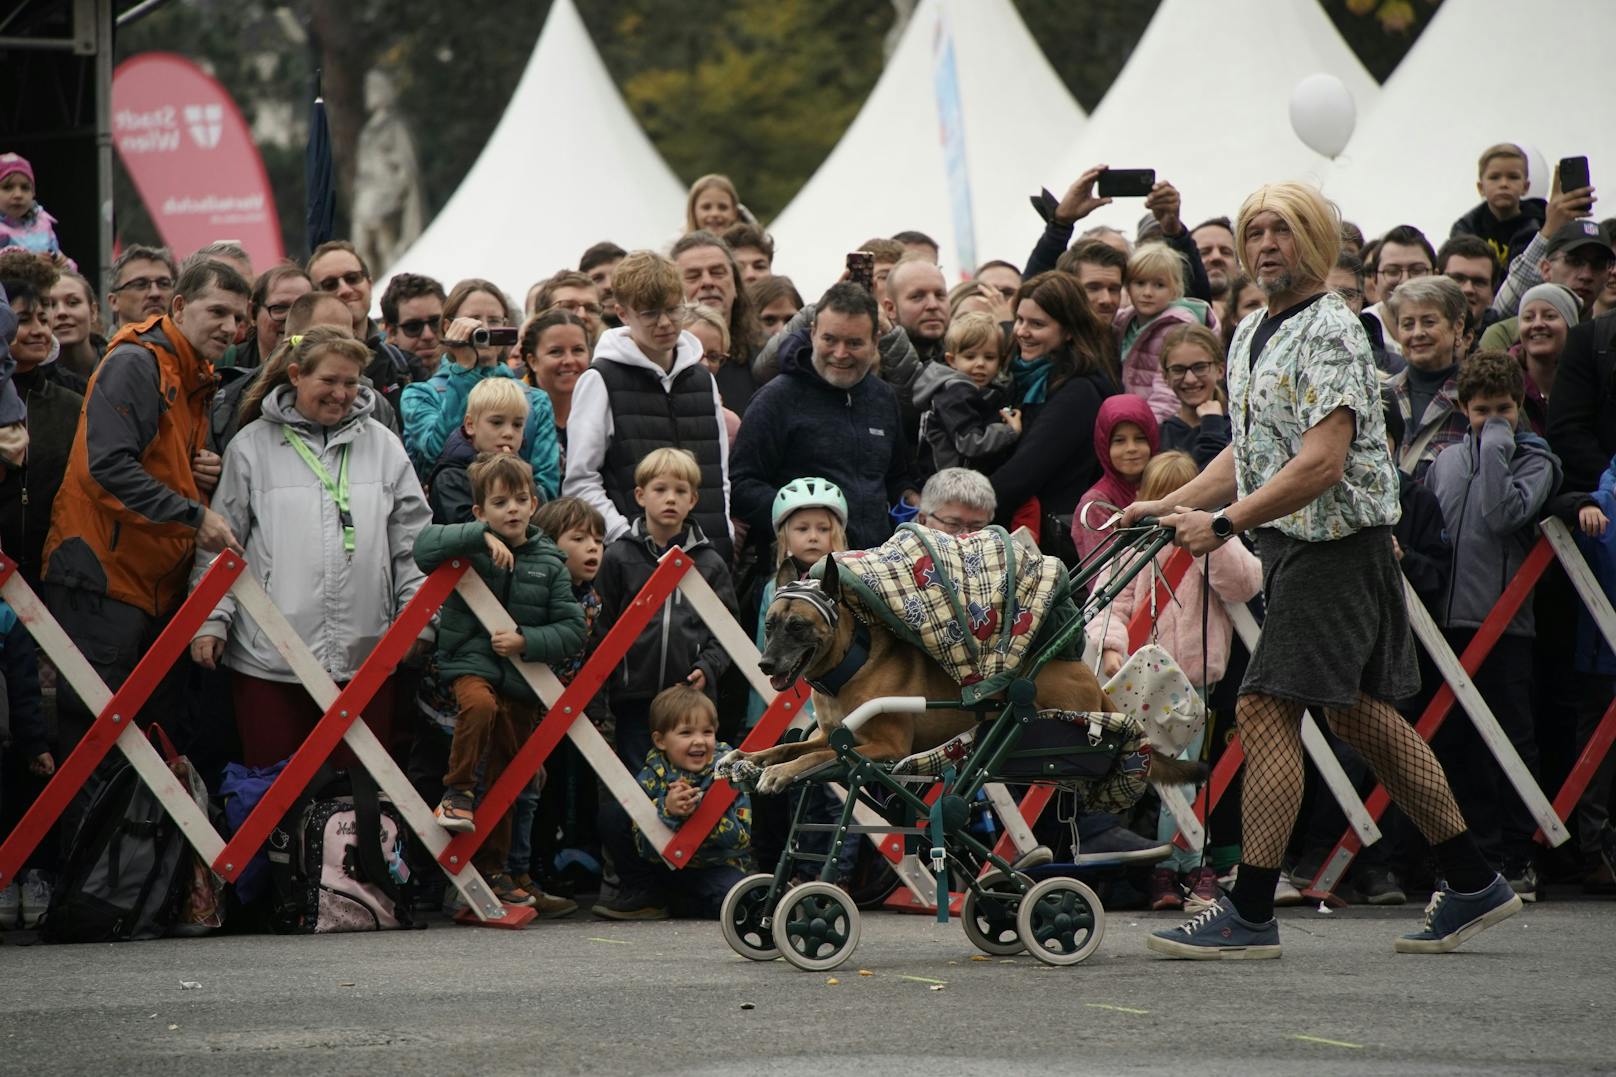 Nanu, was ist denn hier passiert? Bei der Präsentation der Polizeihunde am Wiener Sicherheitsfest sorgte ein Vierbeiner im Kinderwagen mit recht maskulinem Frauchen für Unterhaltung.